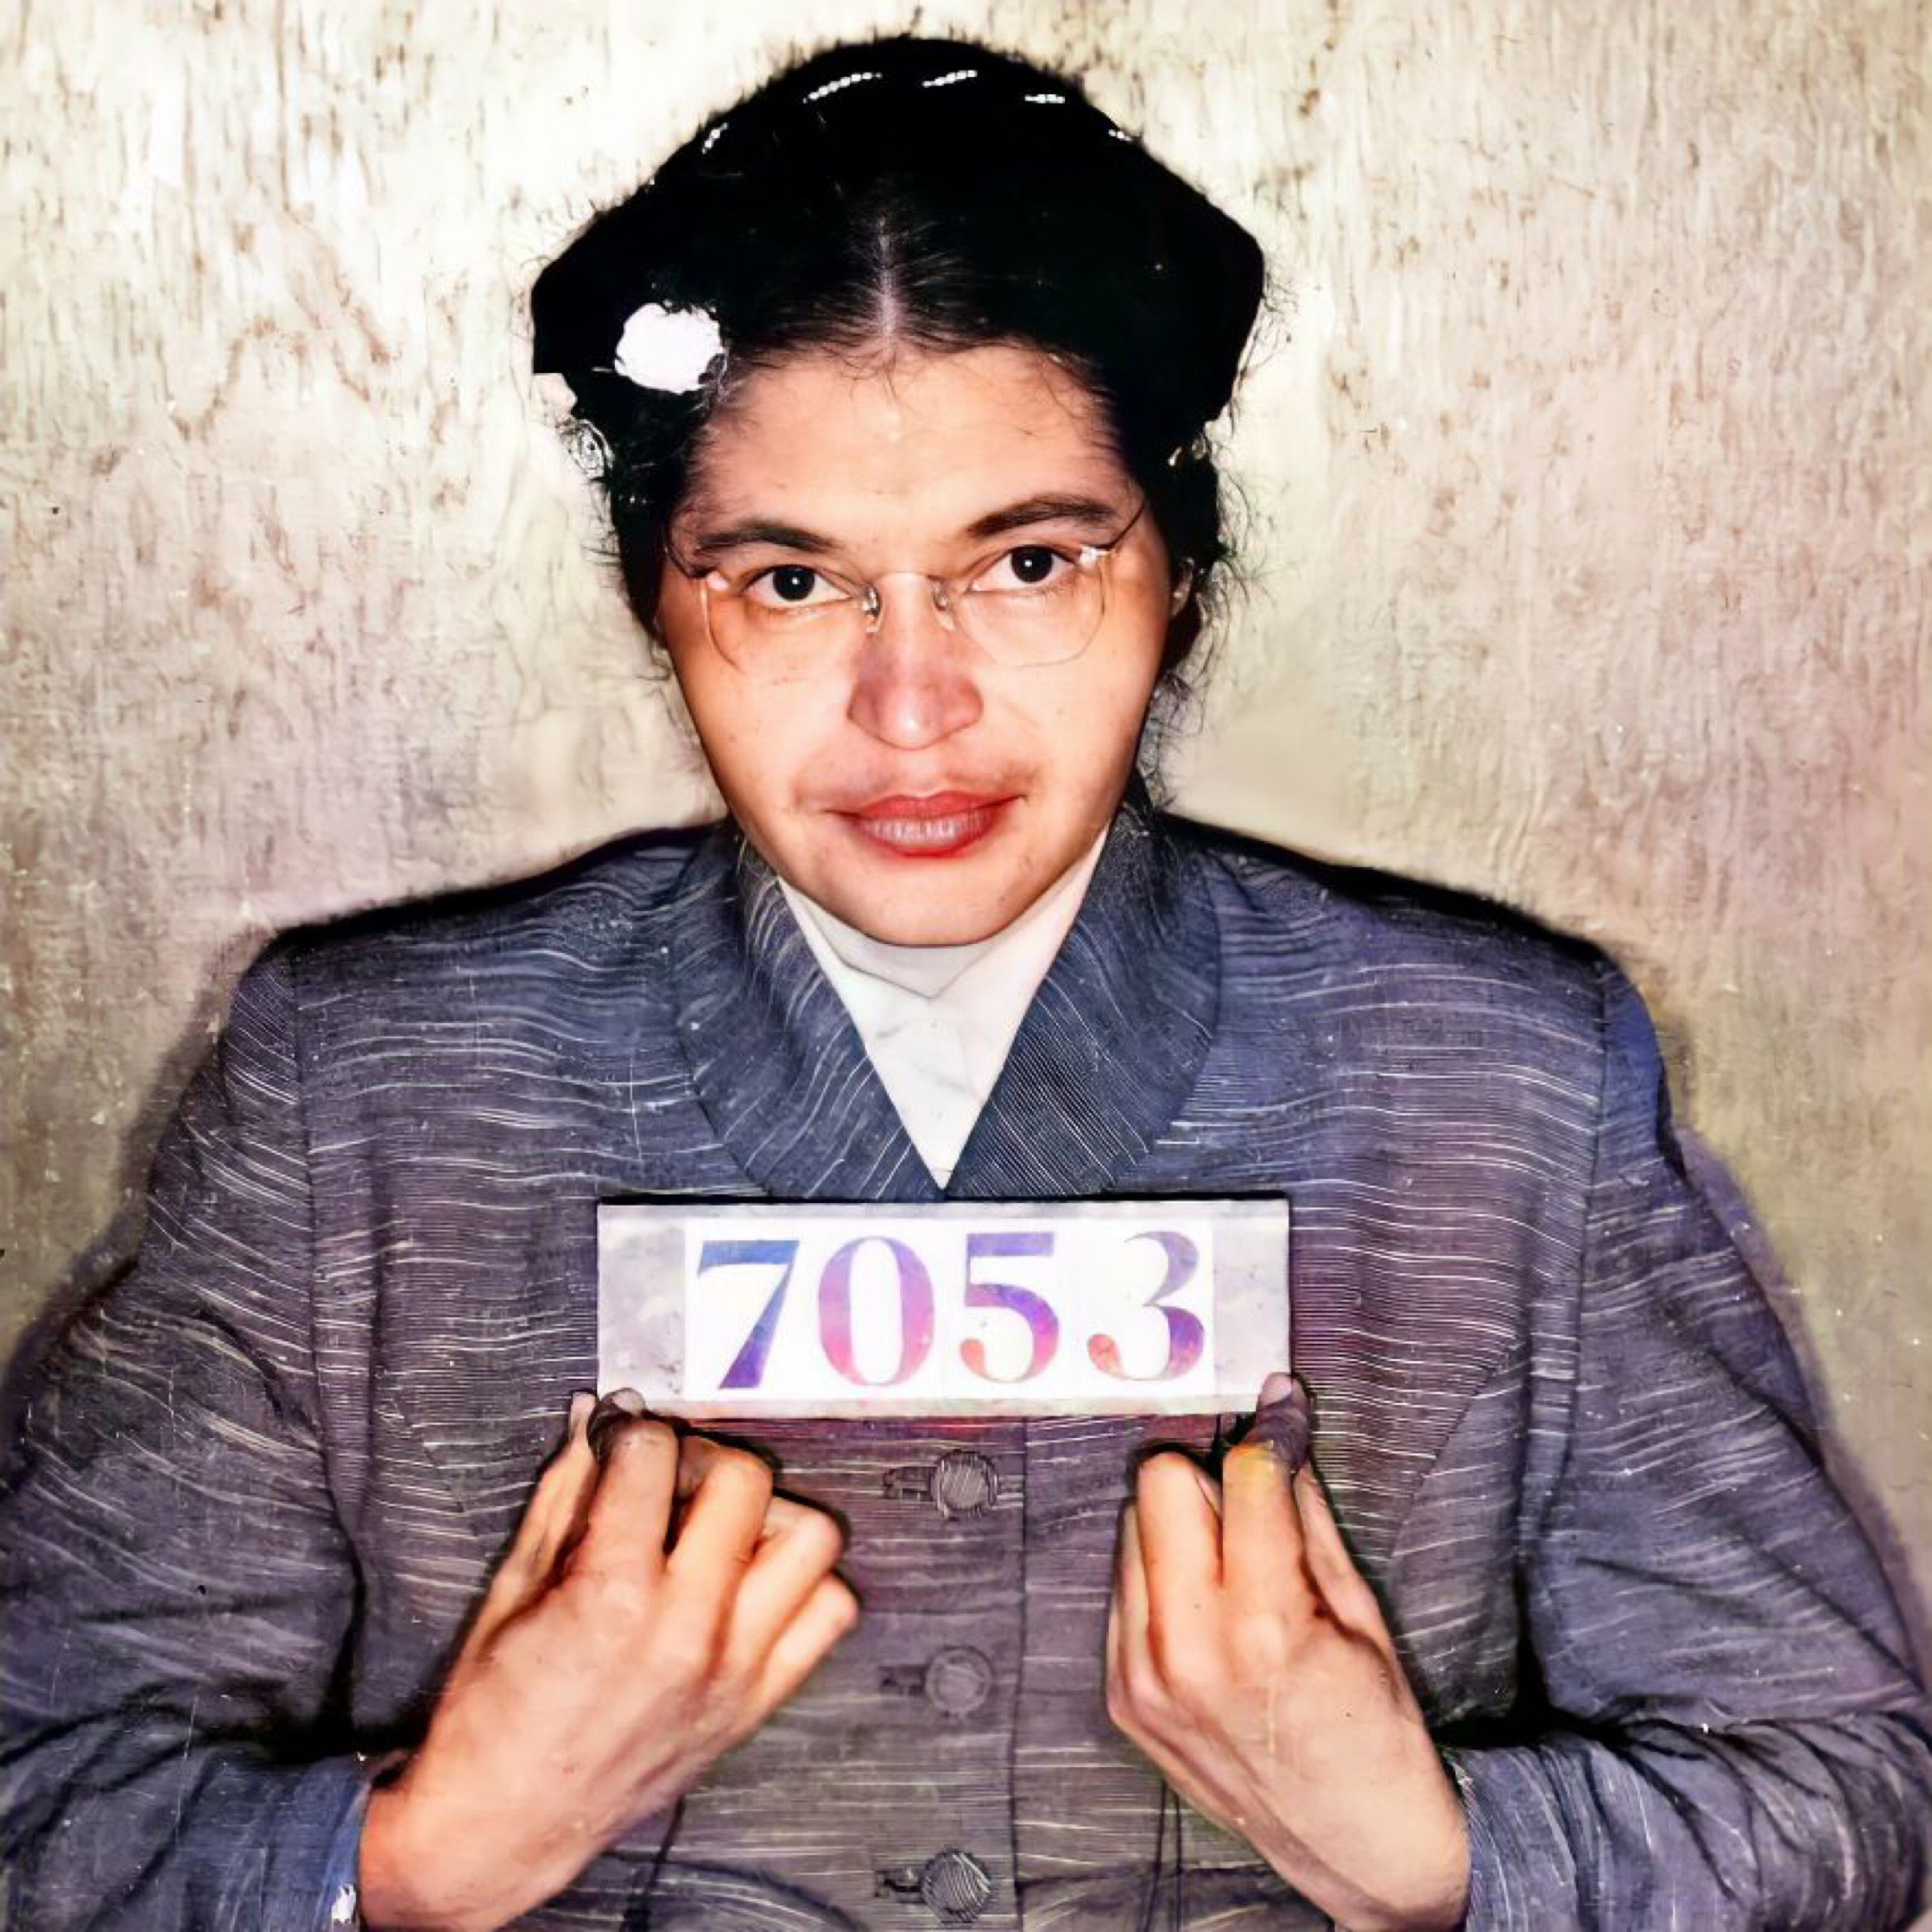 Jason Baker a colorisé ce mugshot de Rosa Parks de 1955. 